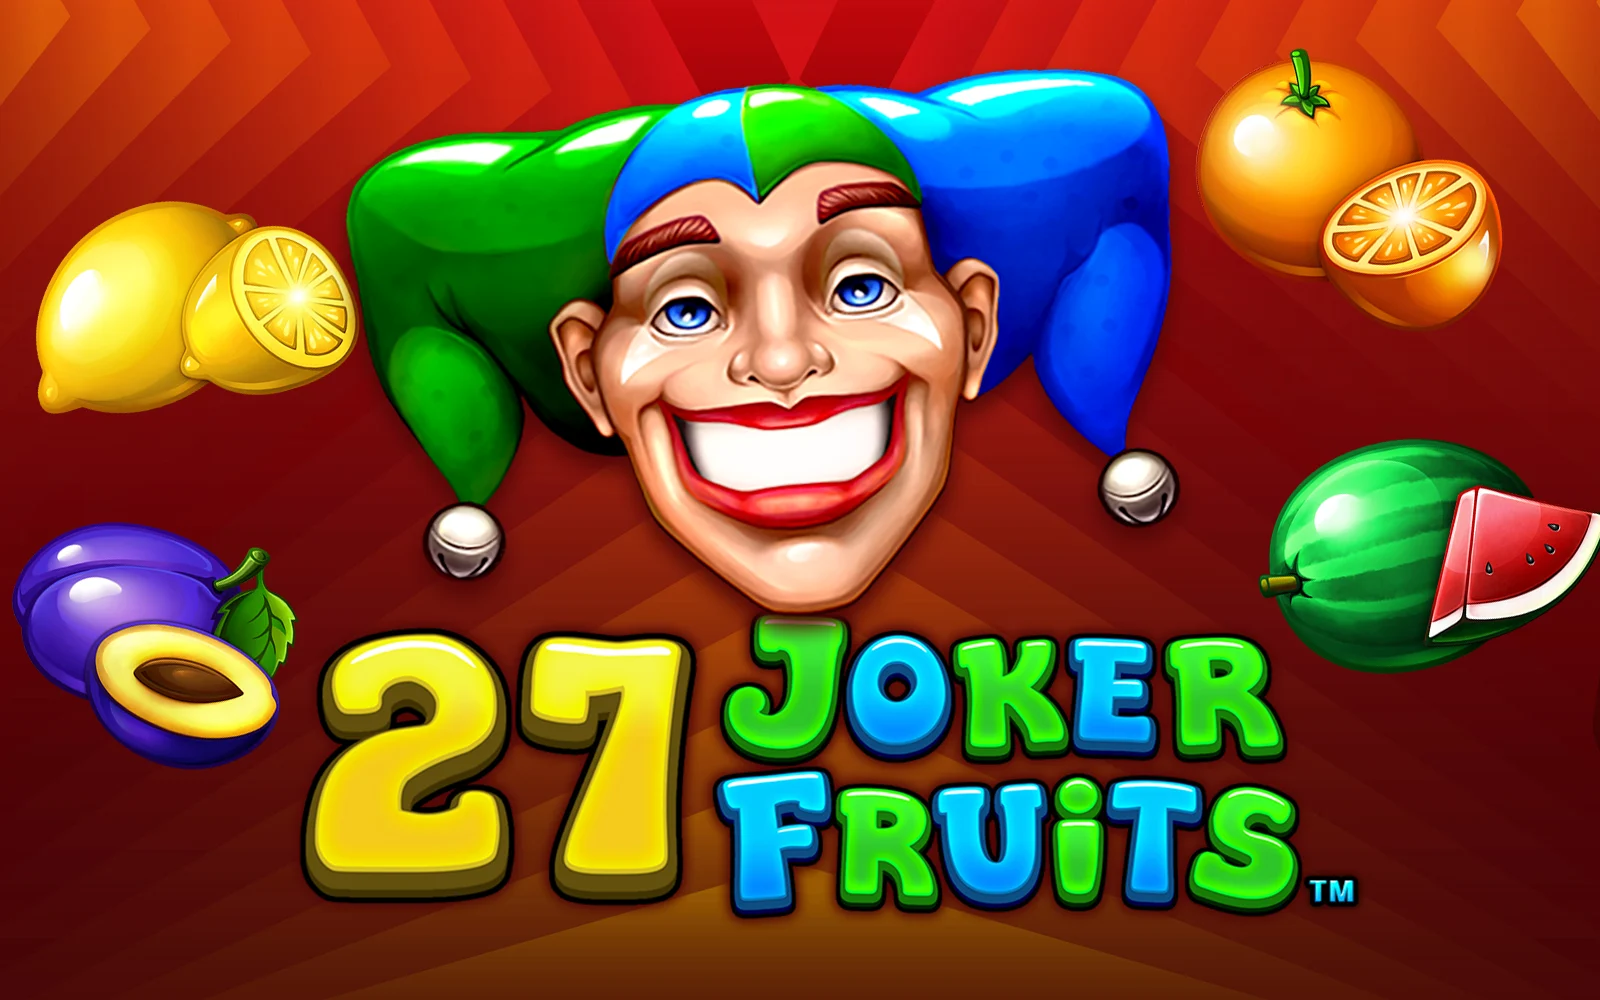 Chơi 27 Joker Fruits trên sòng bạc trực tuyến Starcasino.be